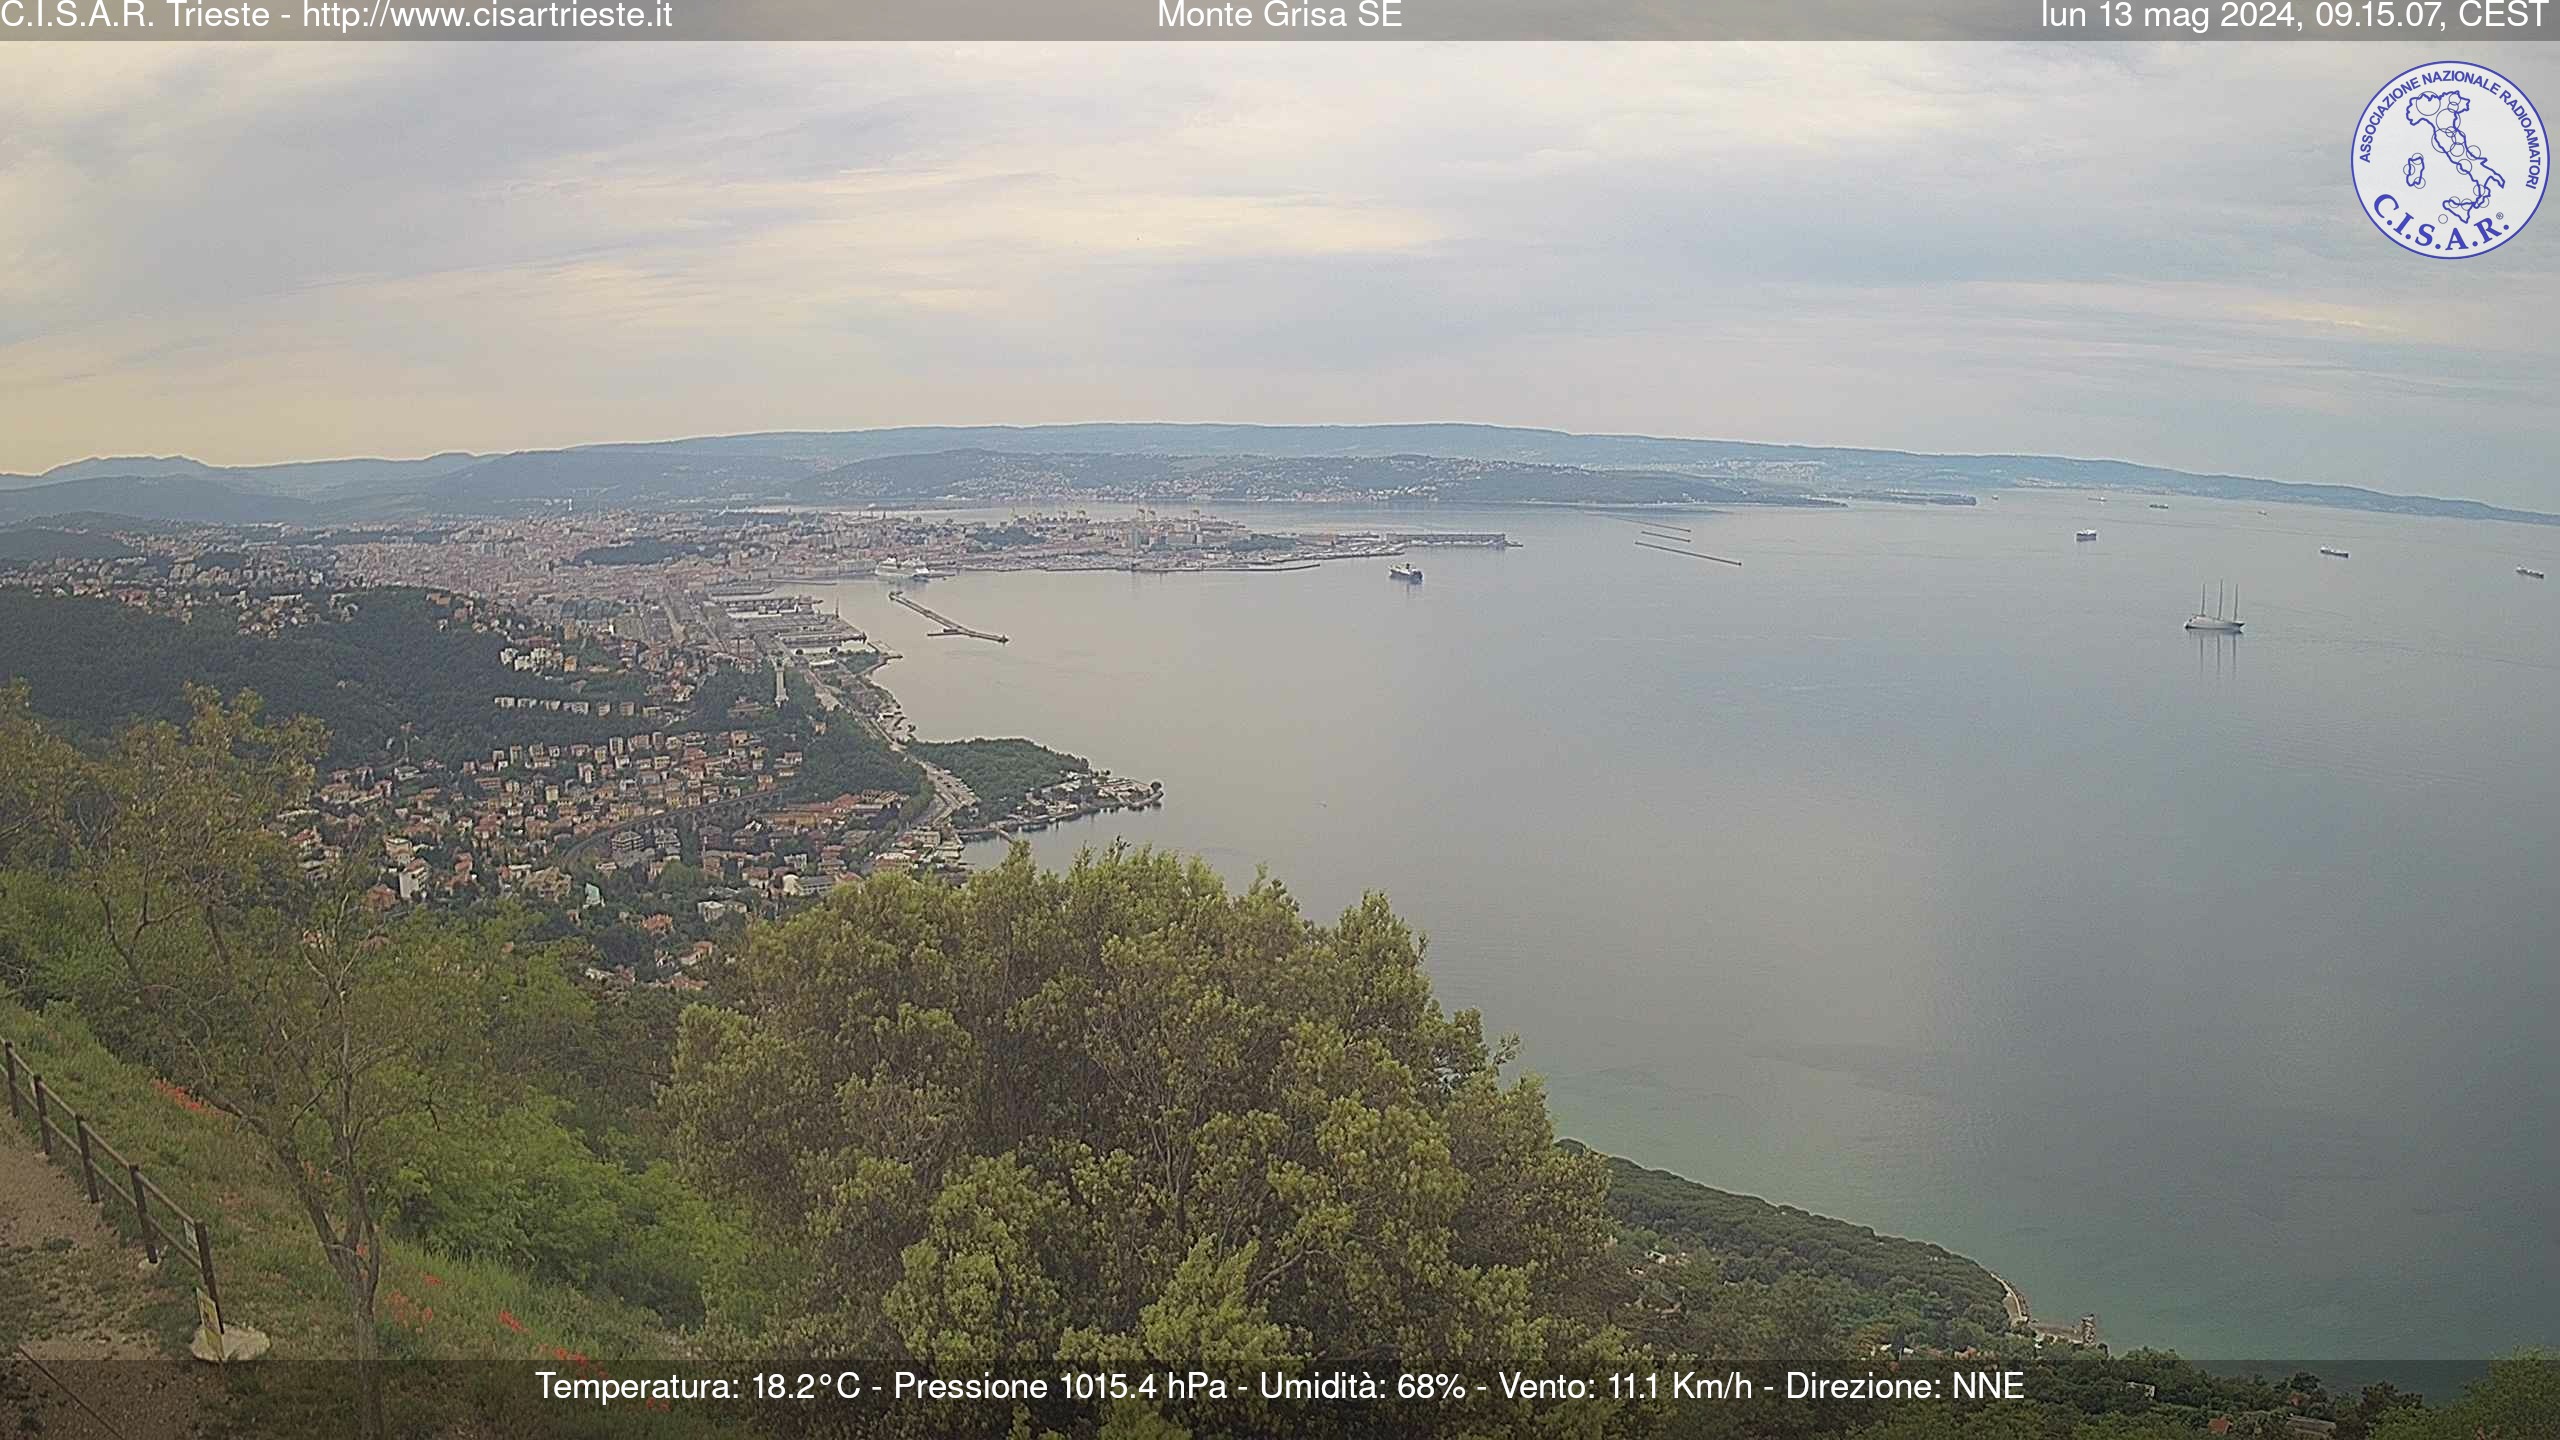 Trieste Di. 09:18